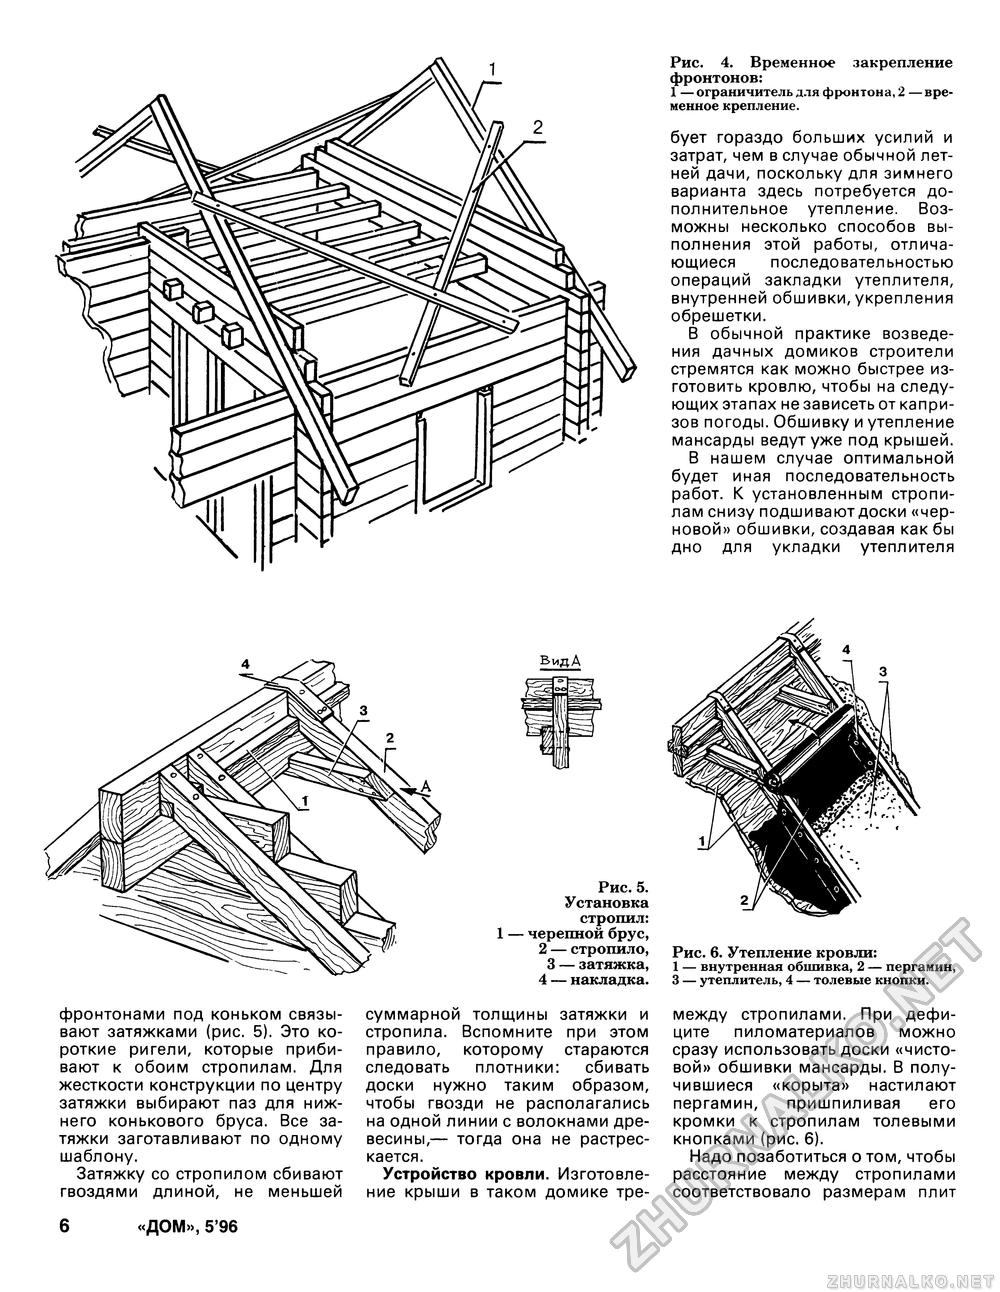 Дом 1996-05, страница 6